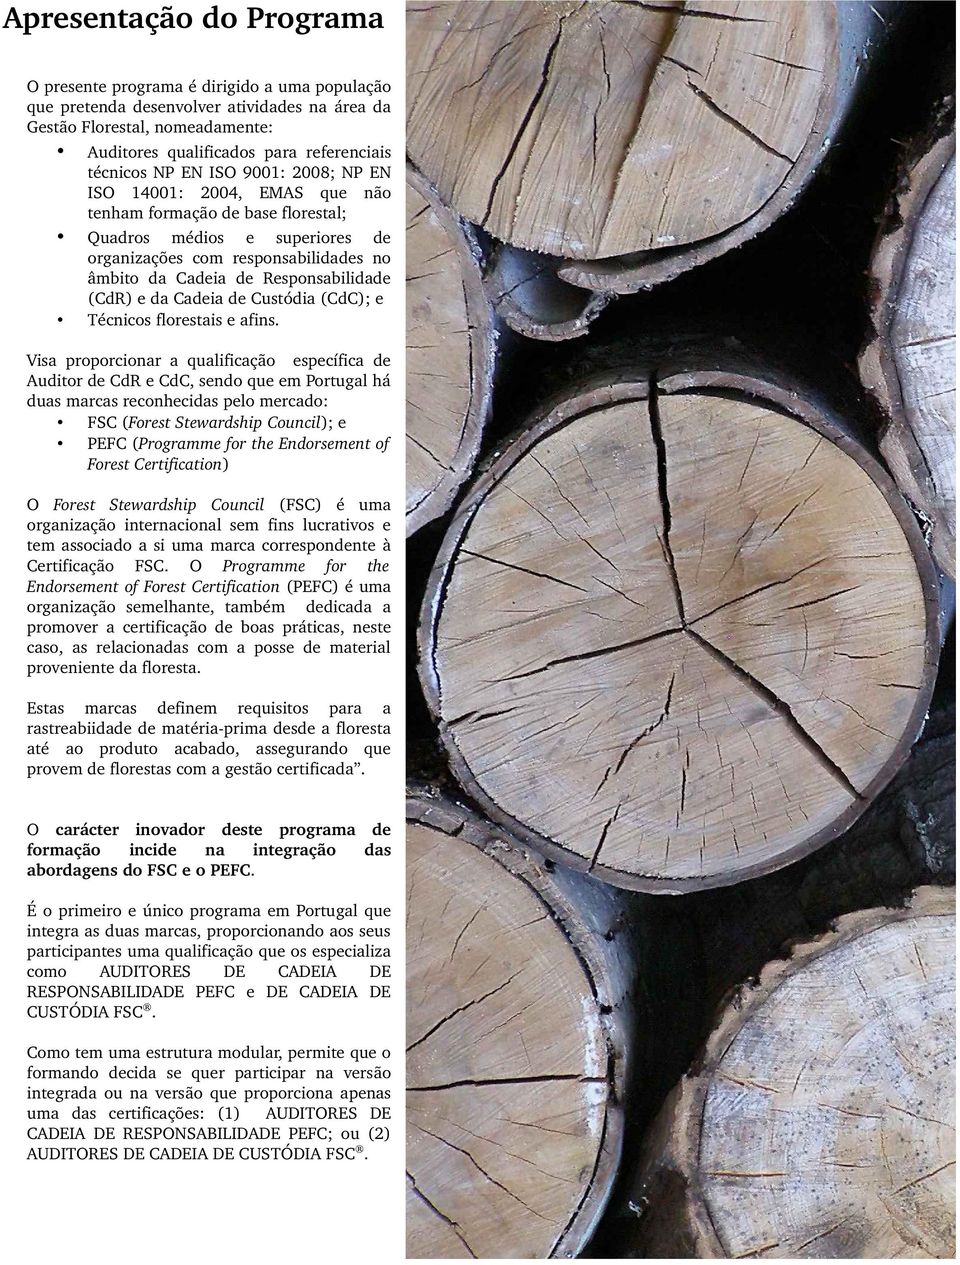 Responsabilidade (CdR) e da Cadeia de Custódia (CdC); e Técnicos florestais e afins.